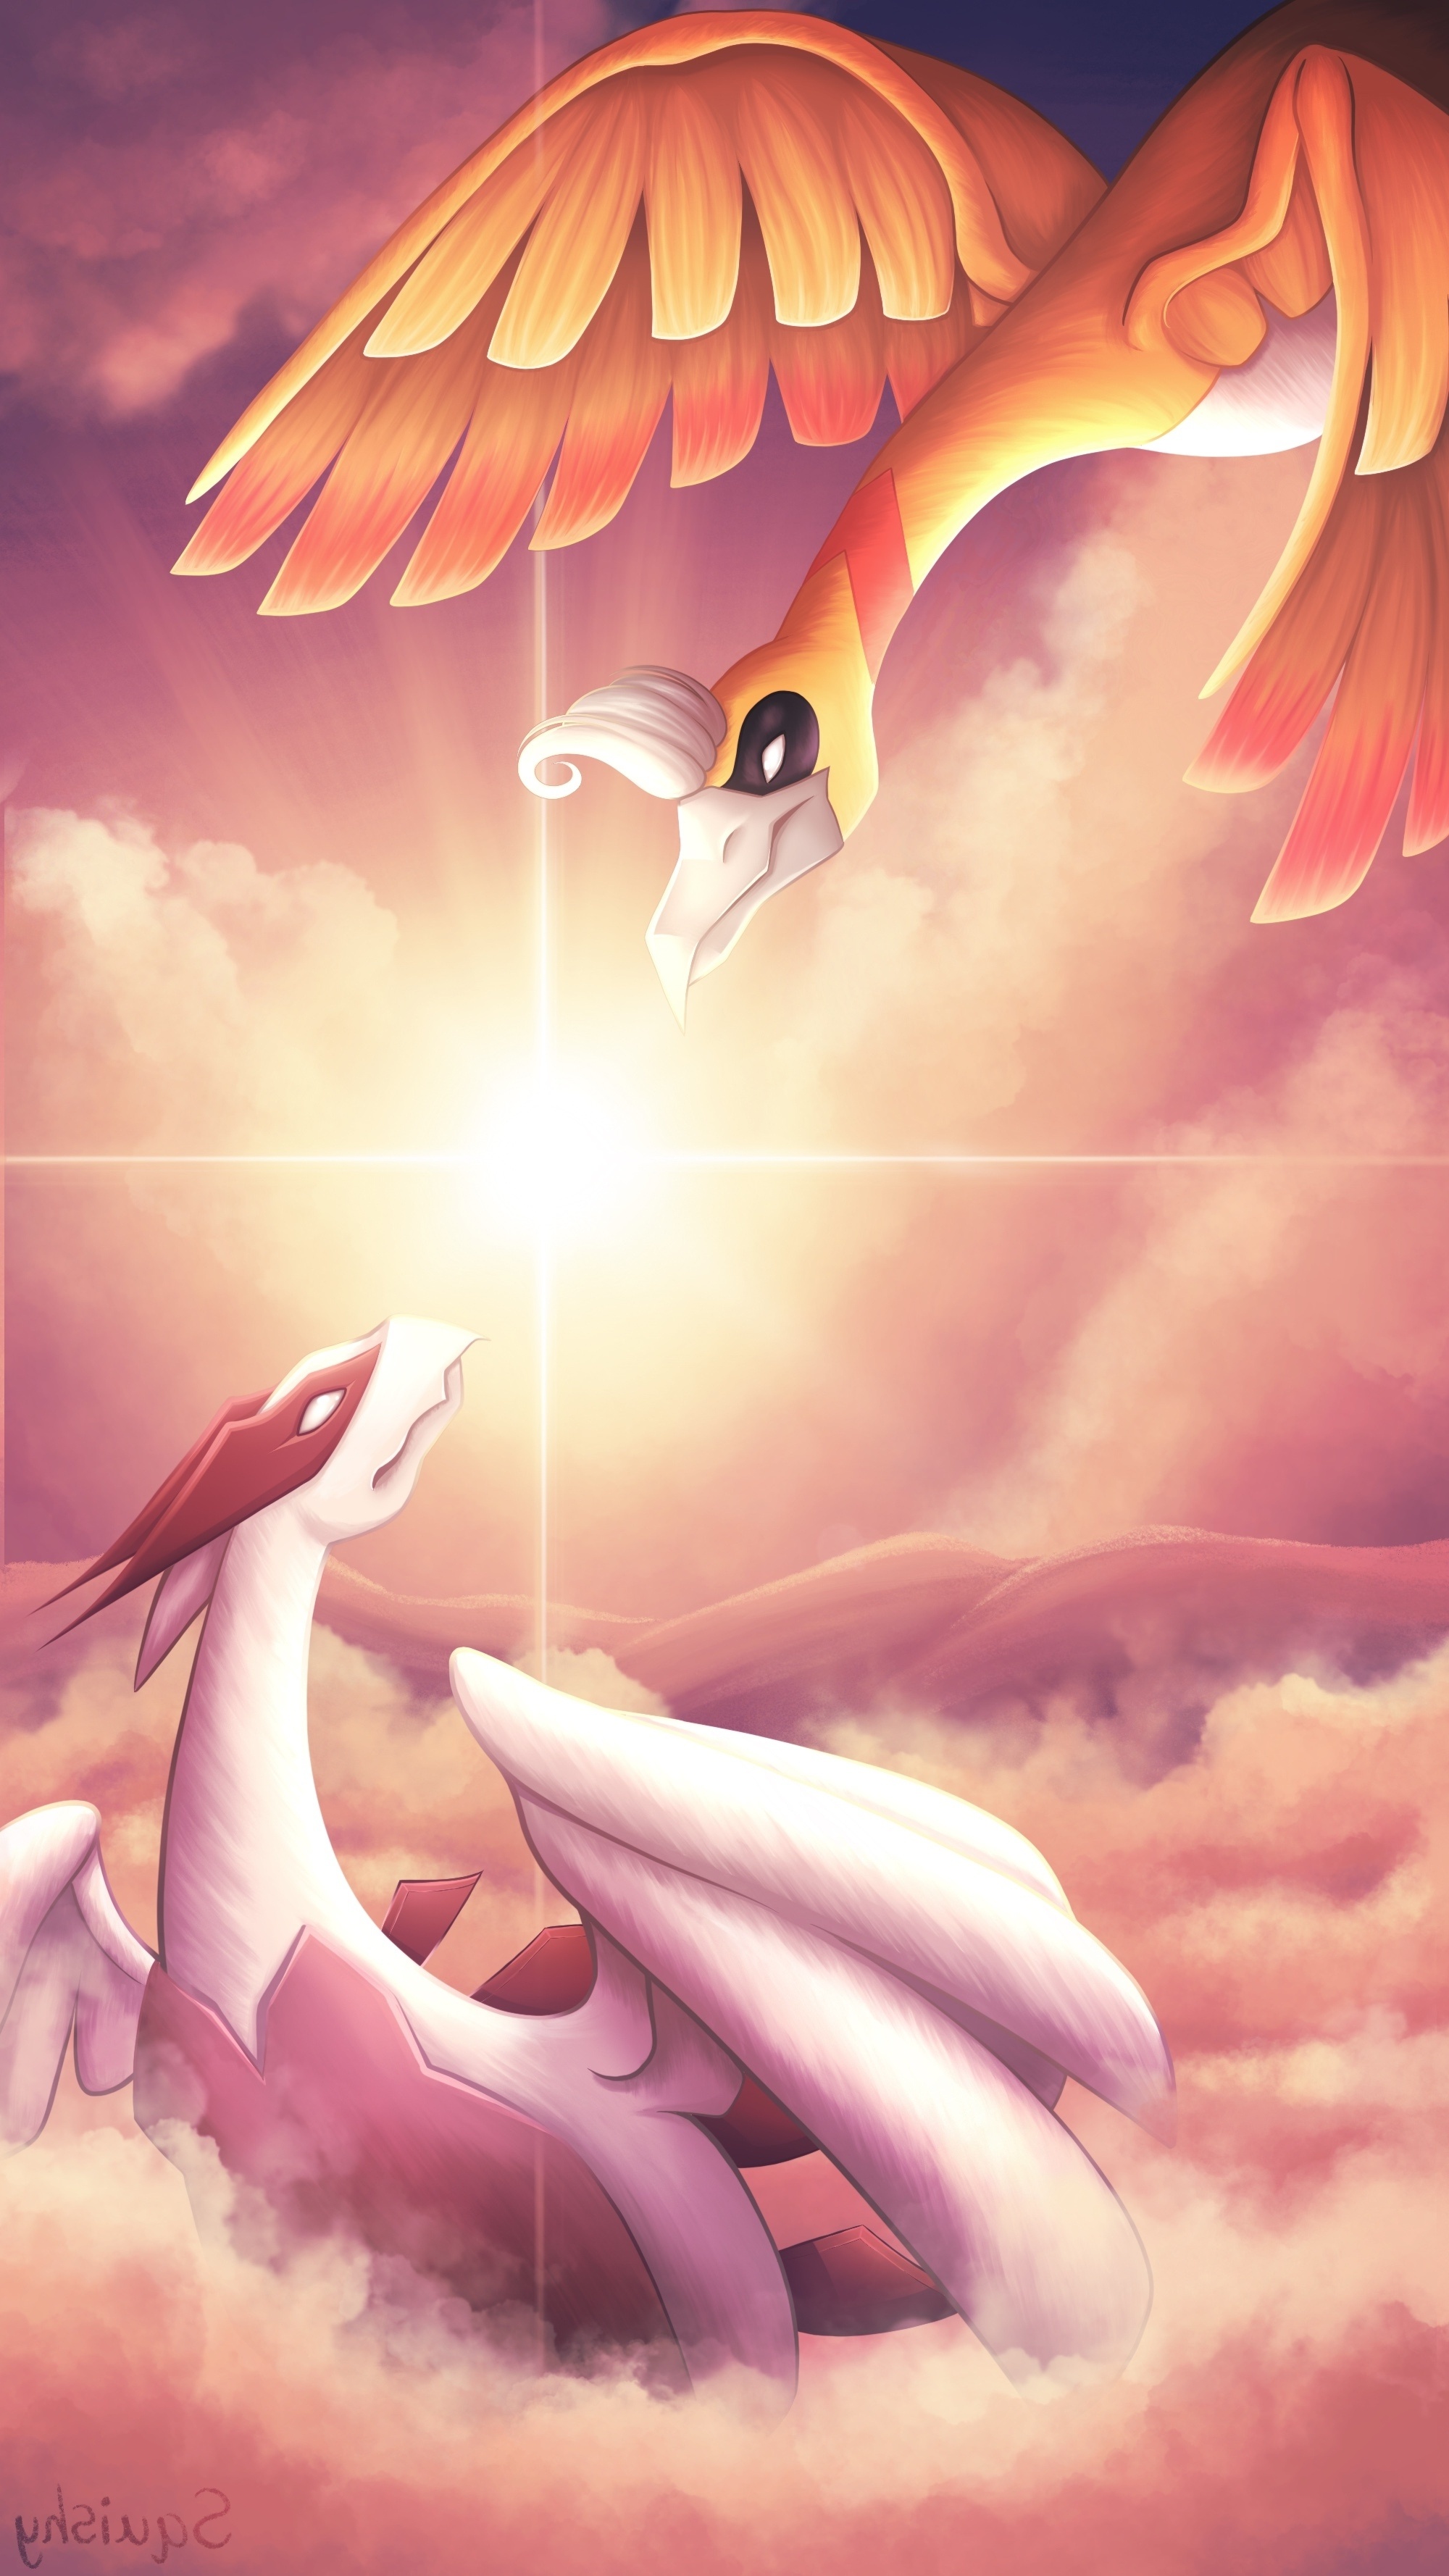 Wallpaper Lugia Pokemon, Beyond the clouds, 2000x3560 HD Handy